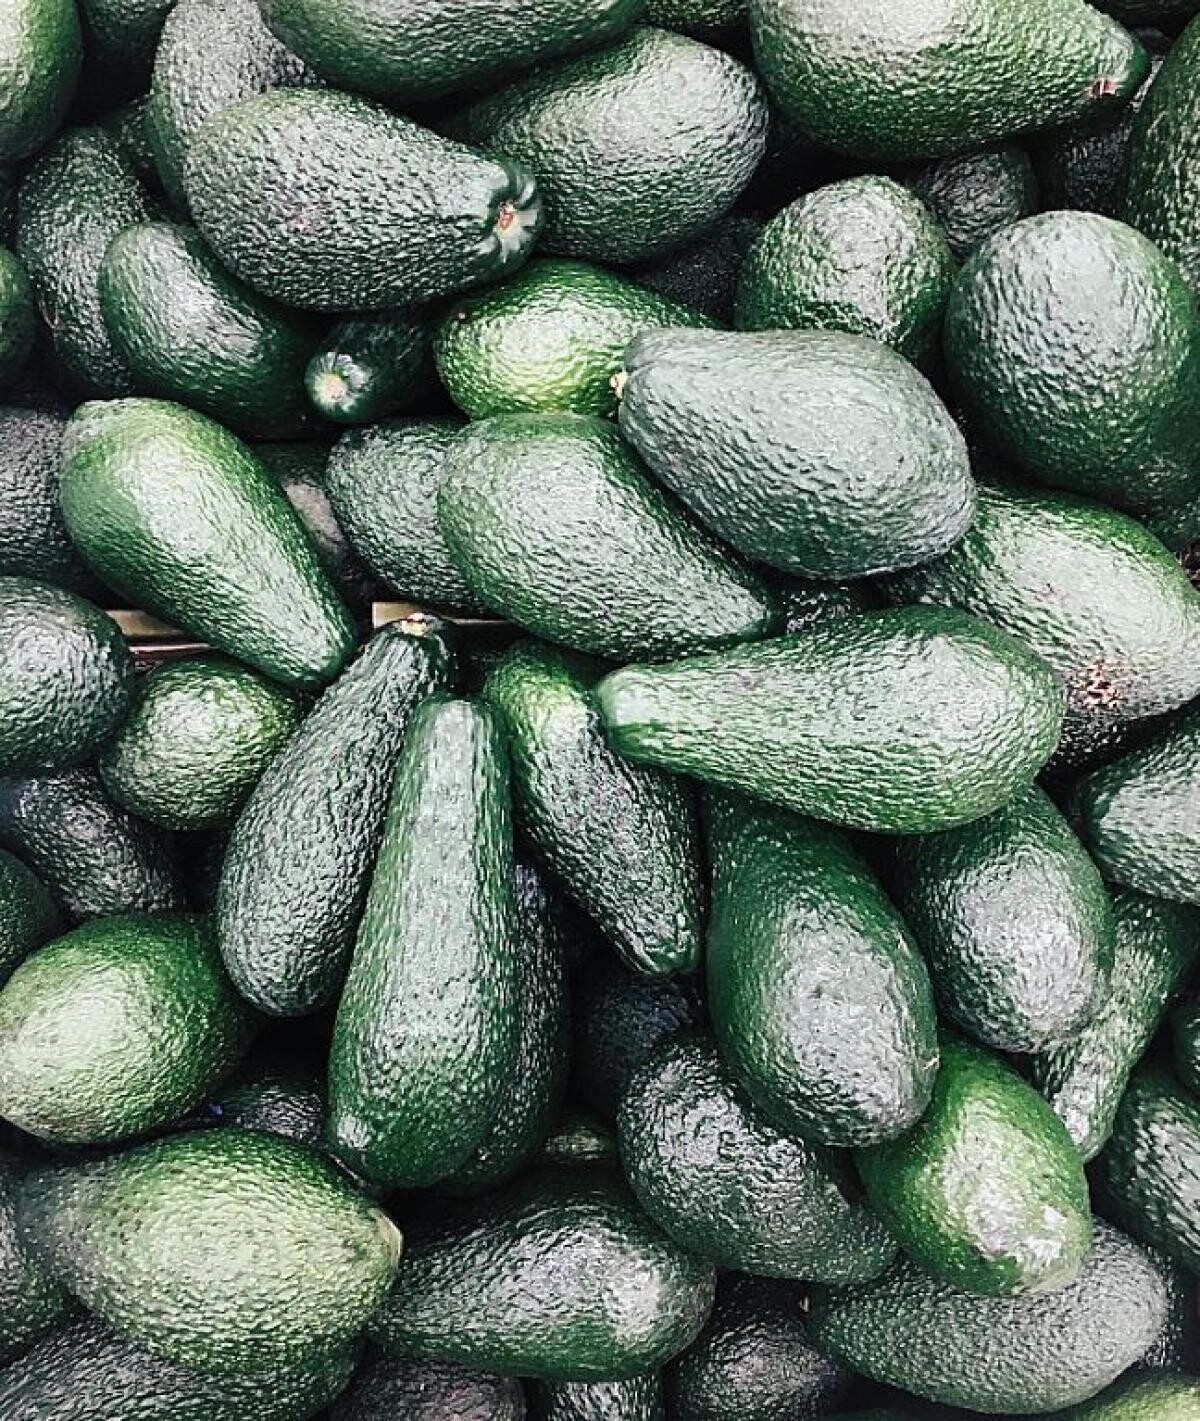 Consumați avocado. Fructul exotic, cu zeci de proprietăți cosmetice pentru piele și păr. Sursa - Pexels